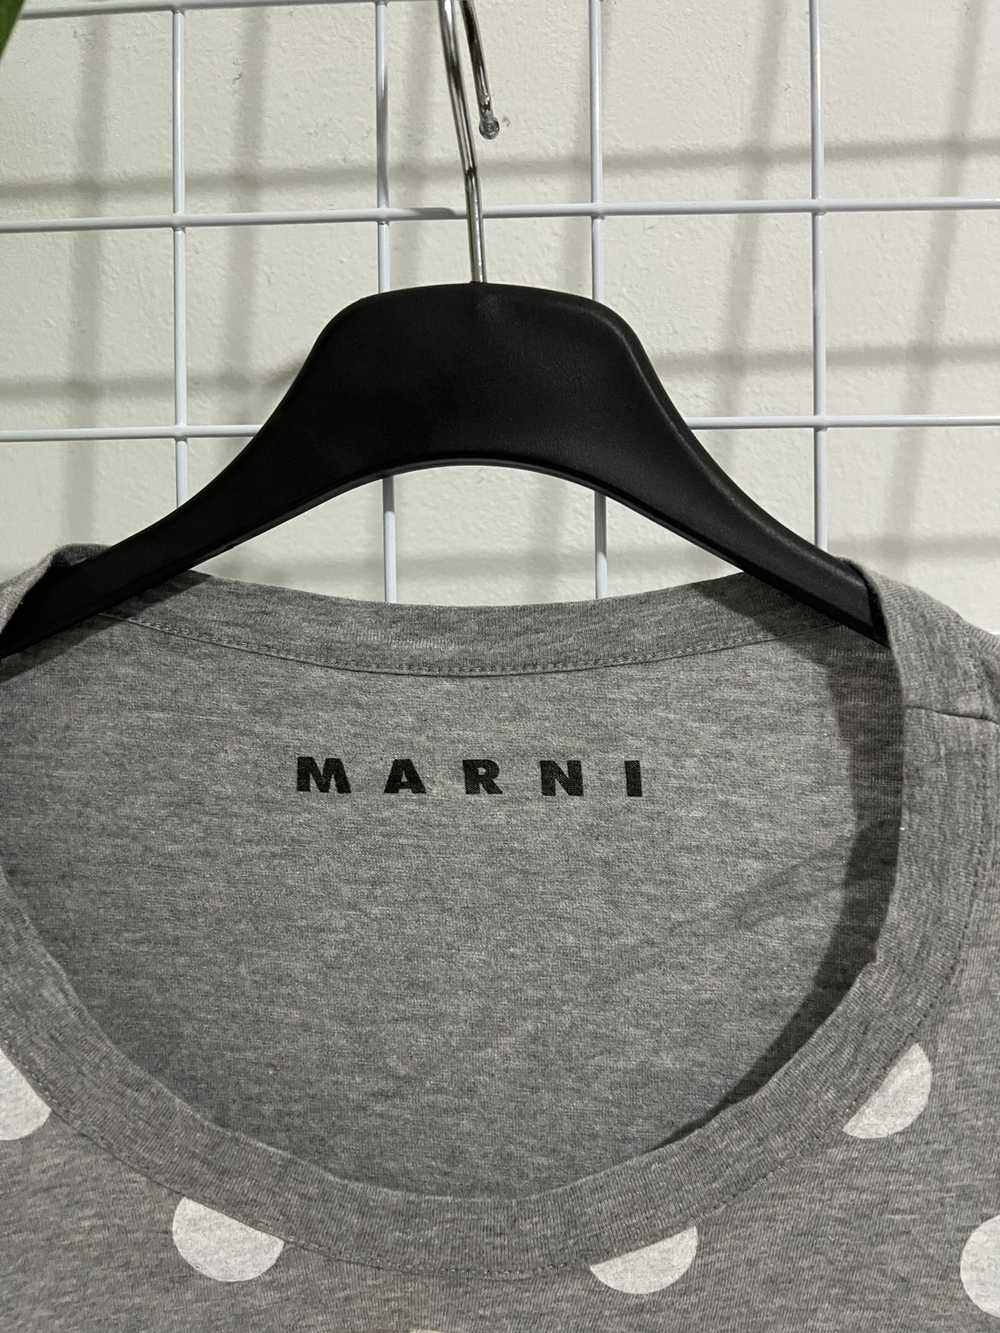 Marni Marni Girl Women Polka Dot - image 3